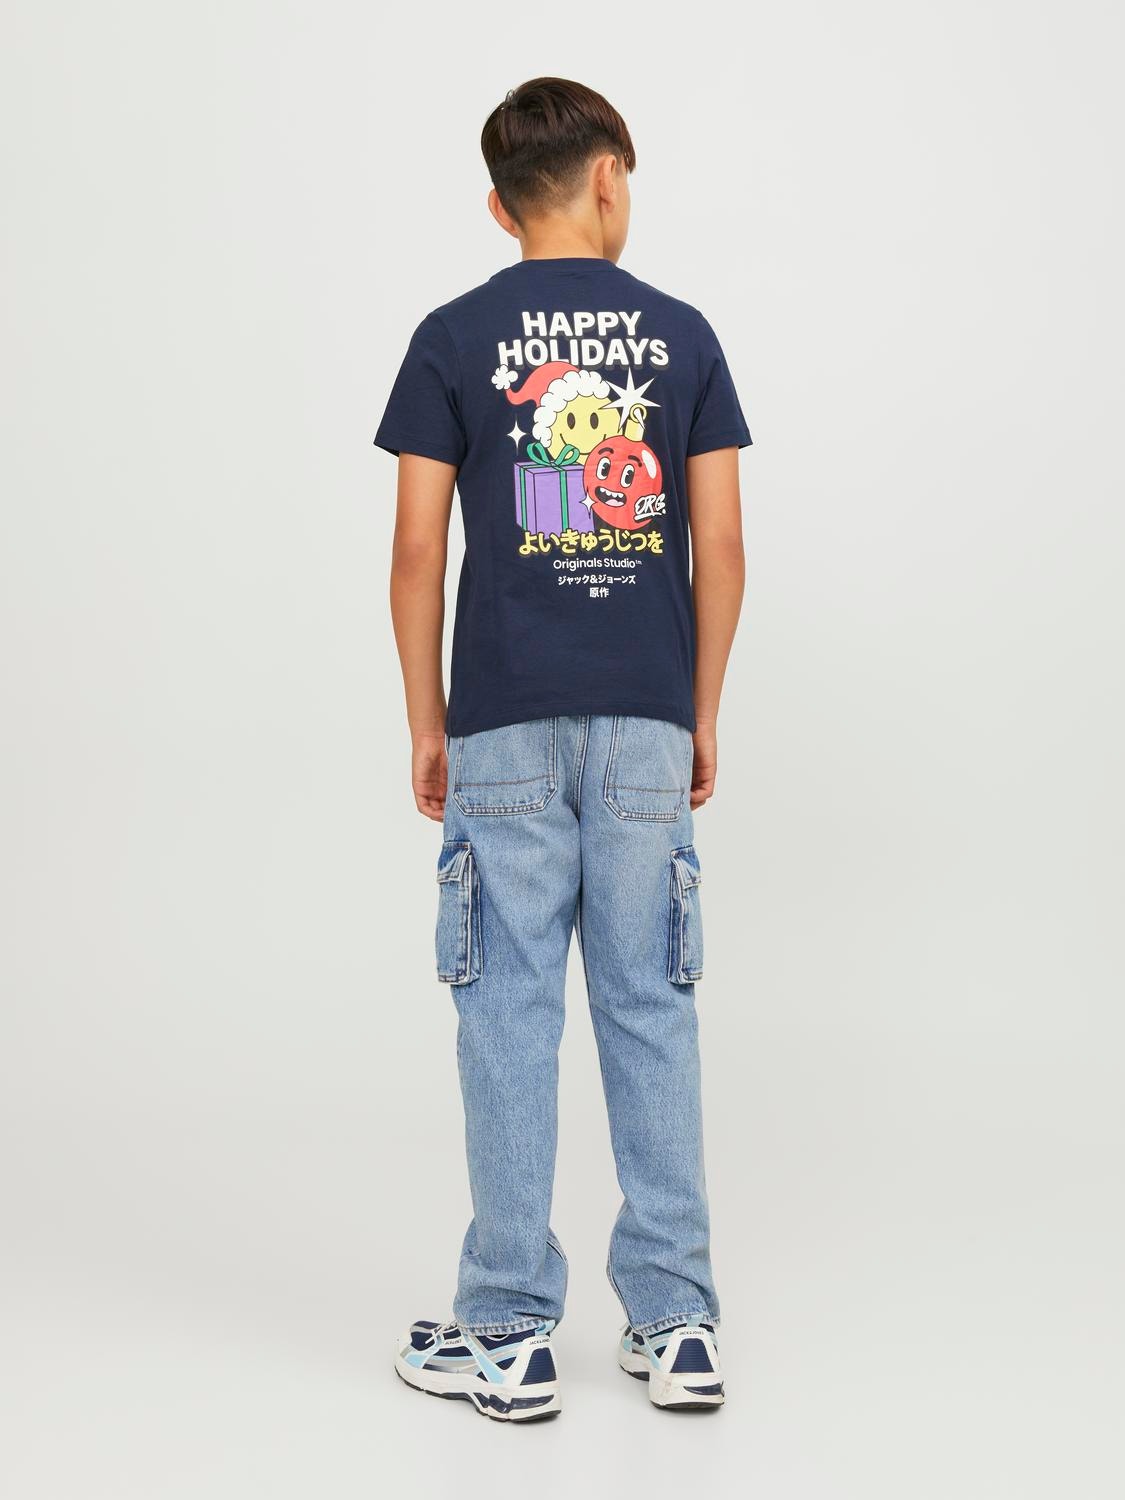 Jack & Jones X-mas Marškinėliai For boys -Navy Blazer - 12247766